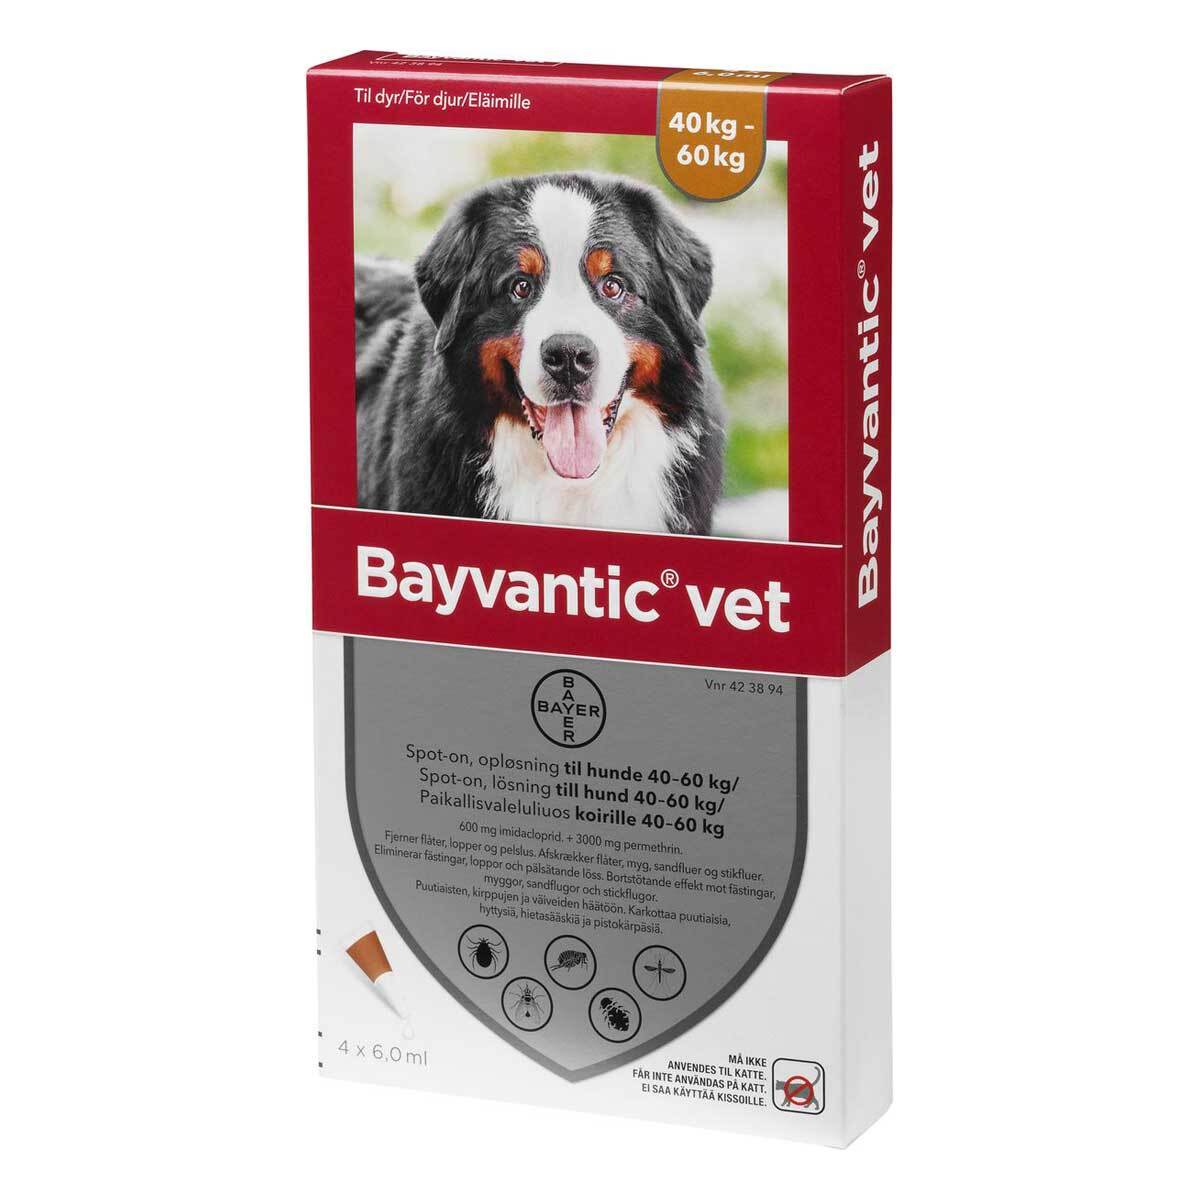 Billede af Bayvantic vet til hund 40-60kg